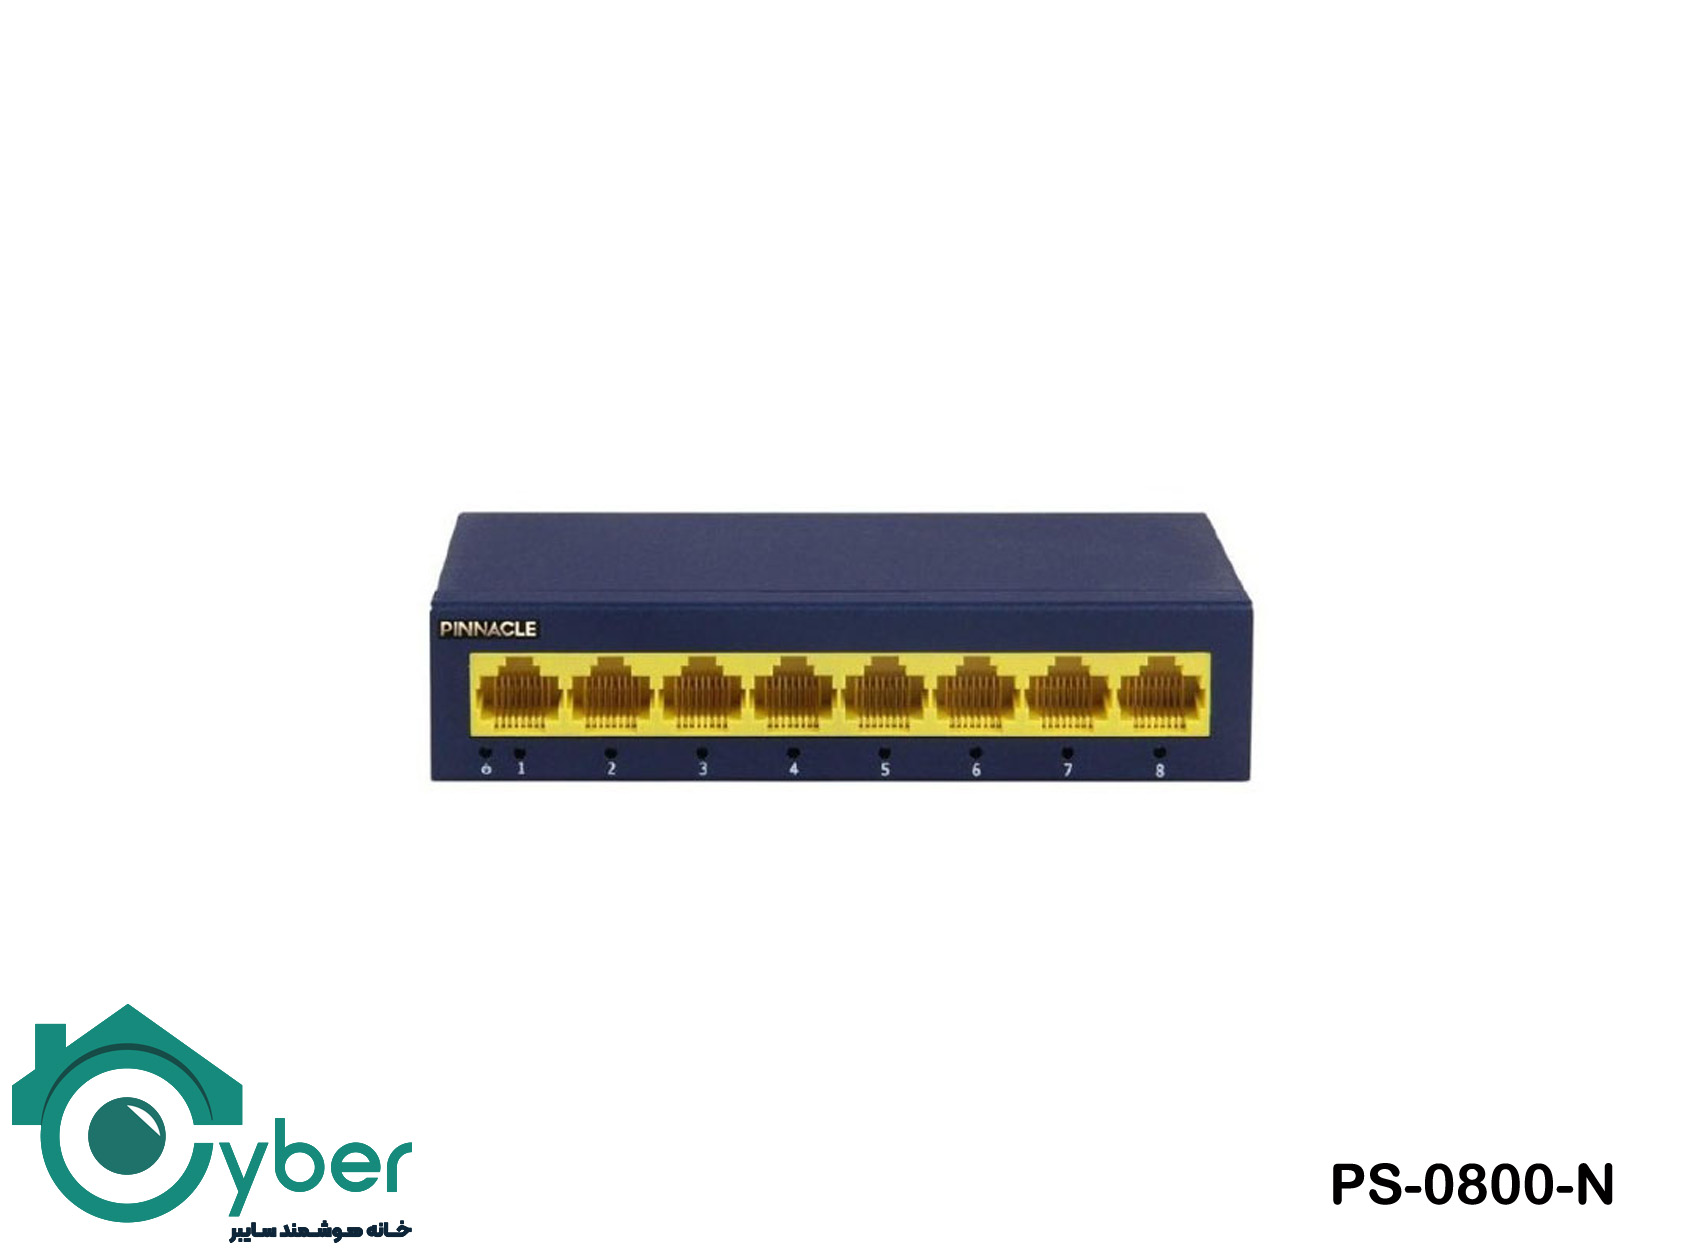 سوییچ شبکه 8 پورت پیناکل PINNACLE مدل PS-0800-N